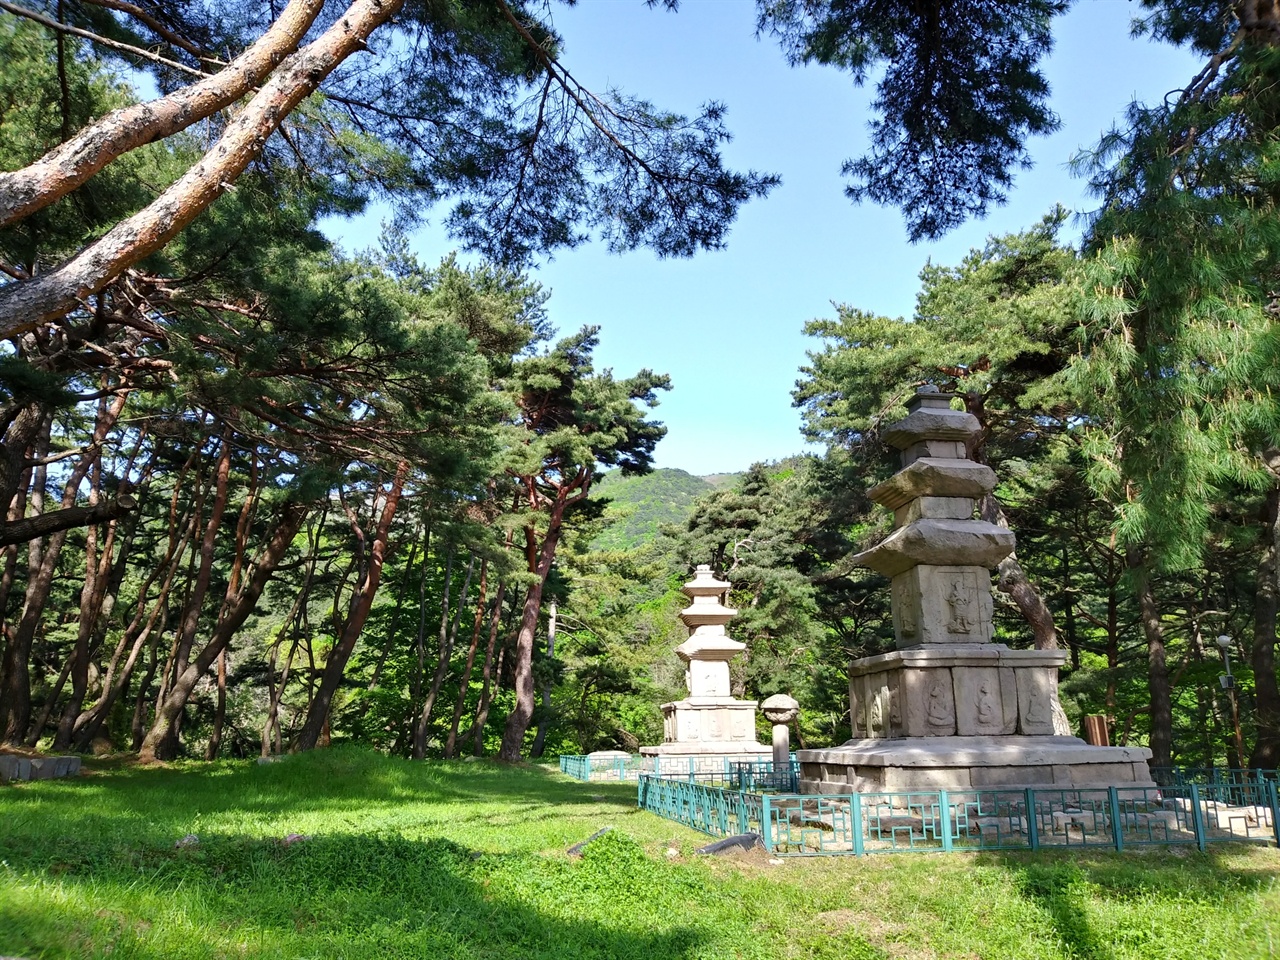 법당이 있던 자리에 자라난 소나무들이 두 개의 석탑을 향해 고개를 숙이고 있어 신비롭다.